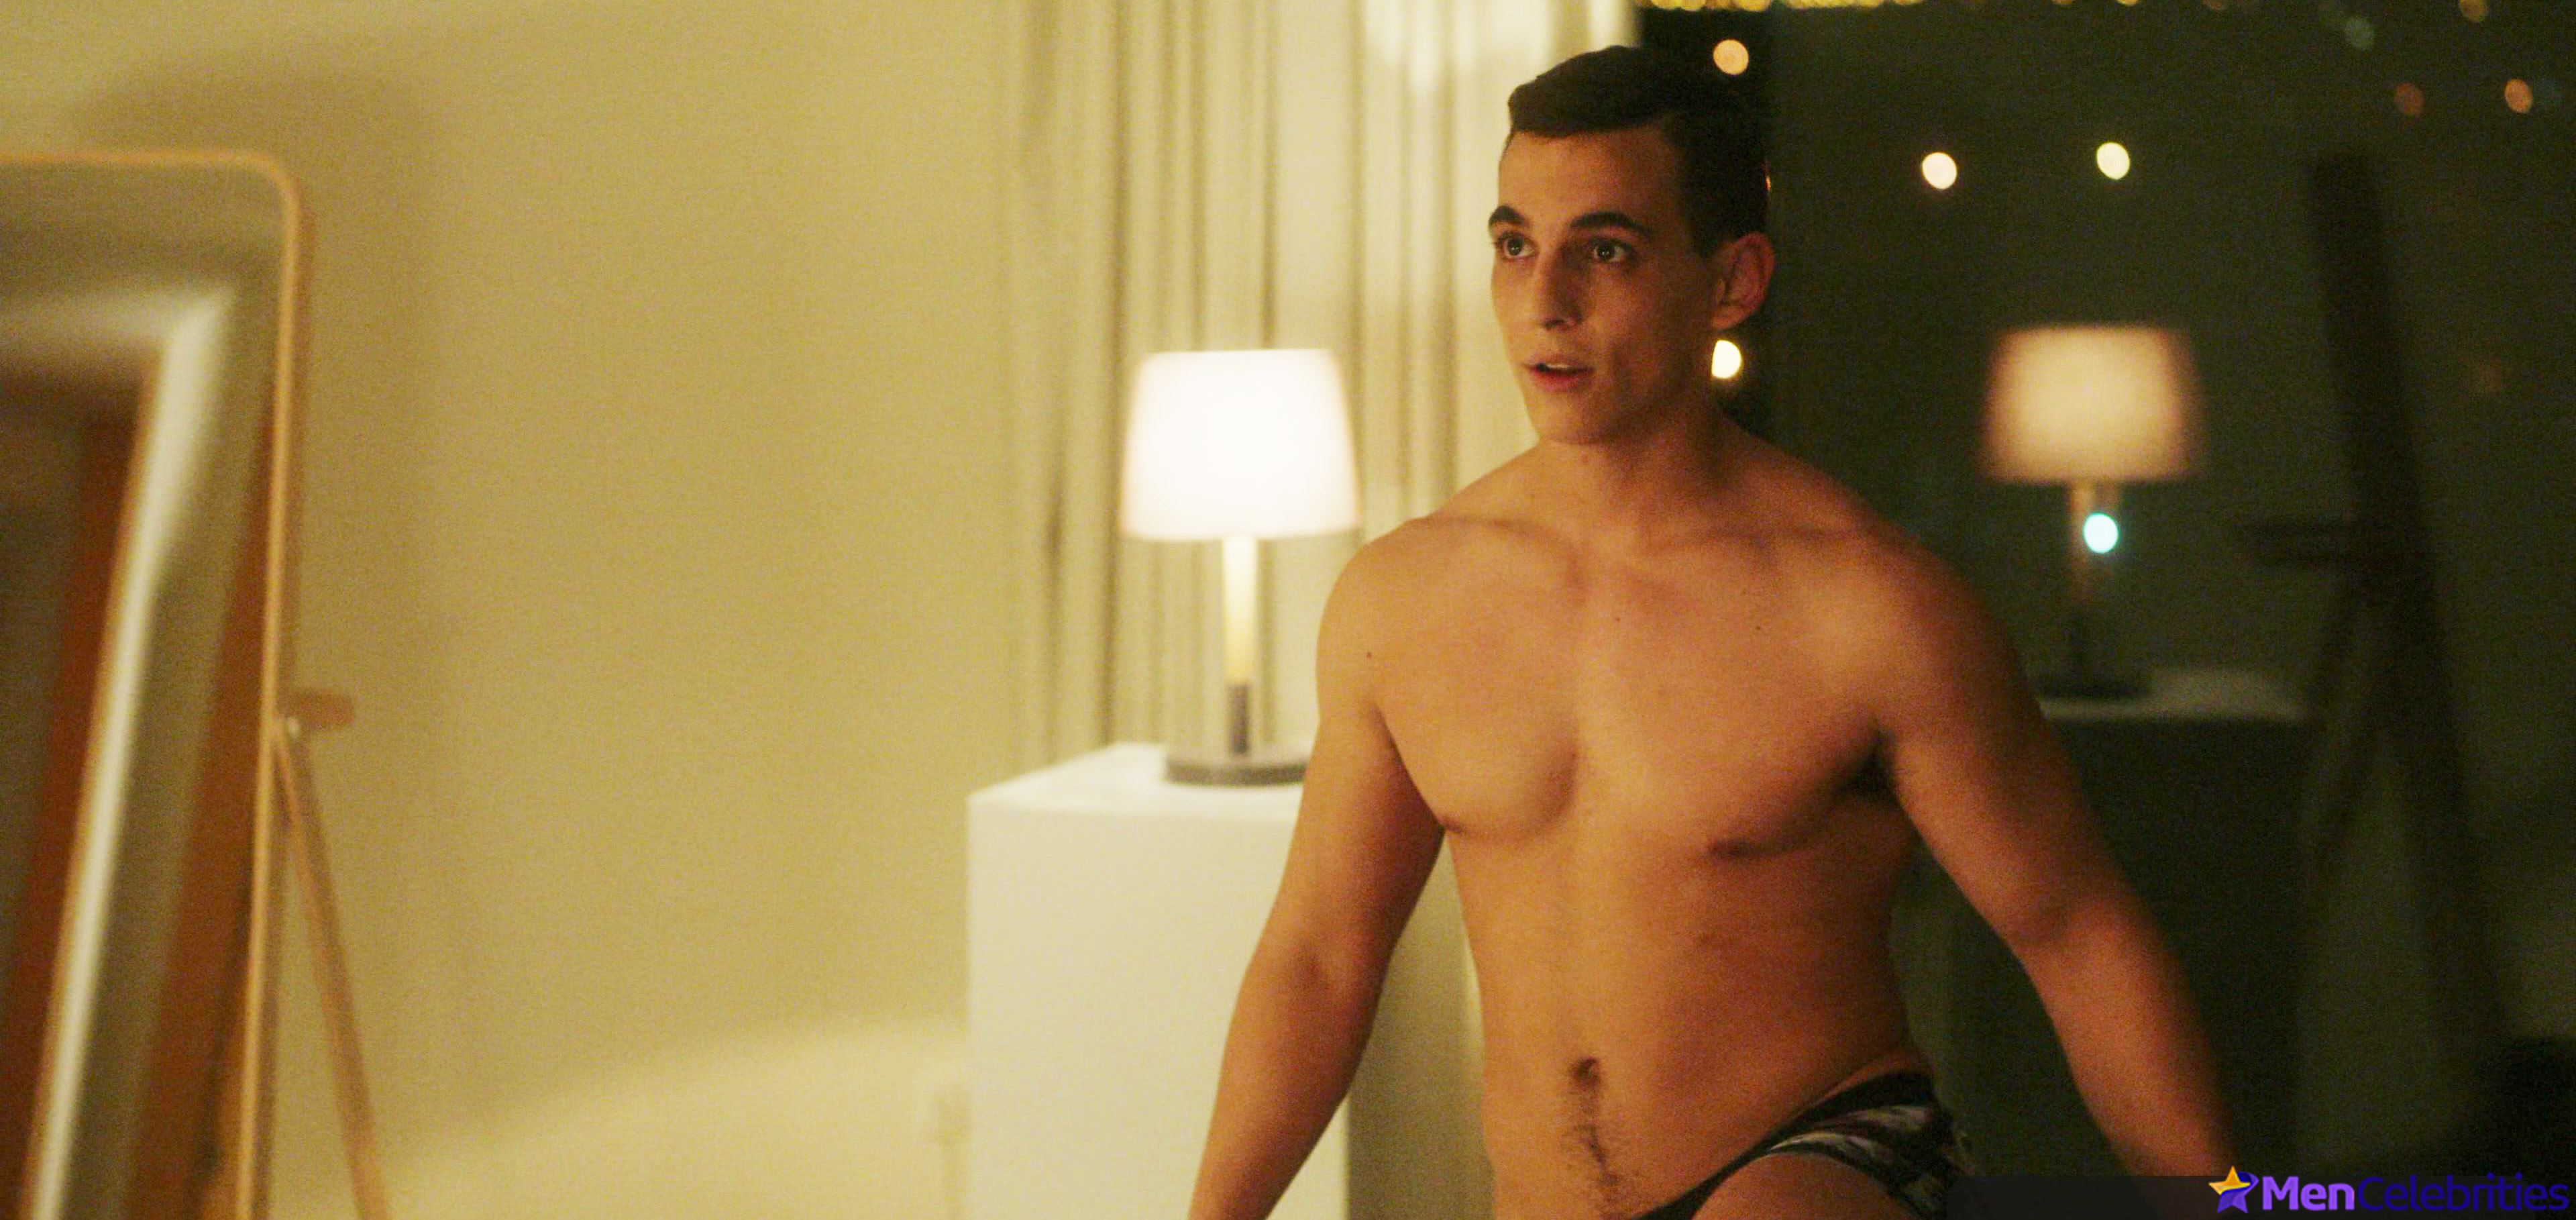 Miguel Herran nude & gay erotic scenes.